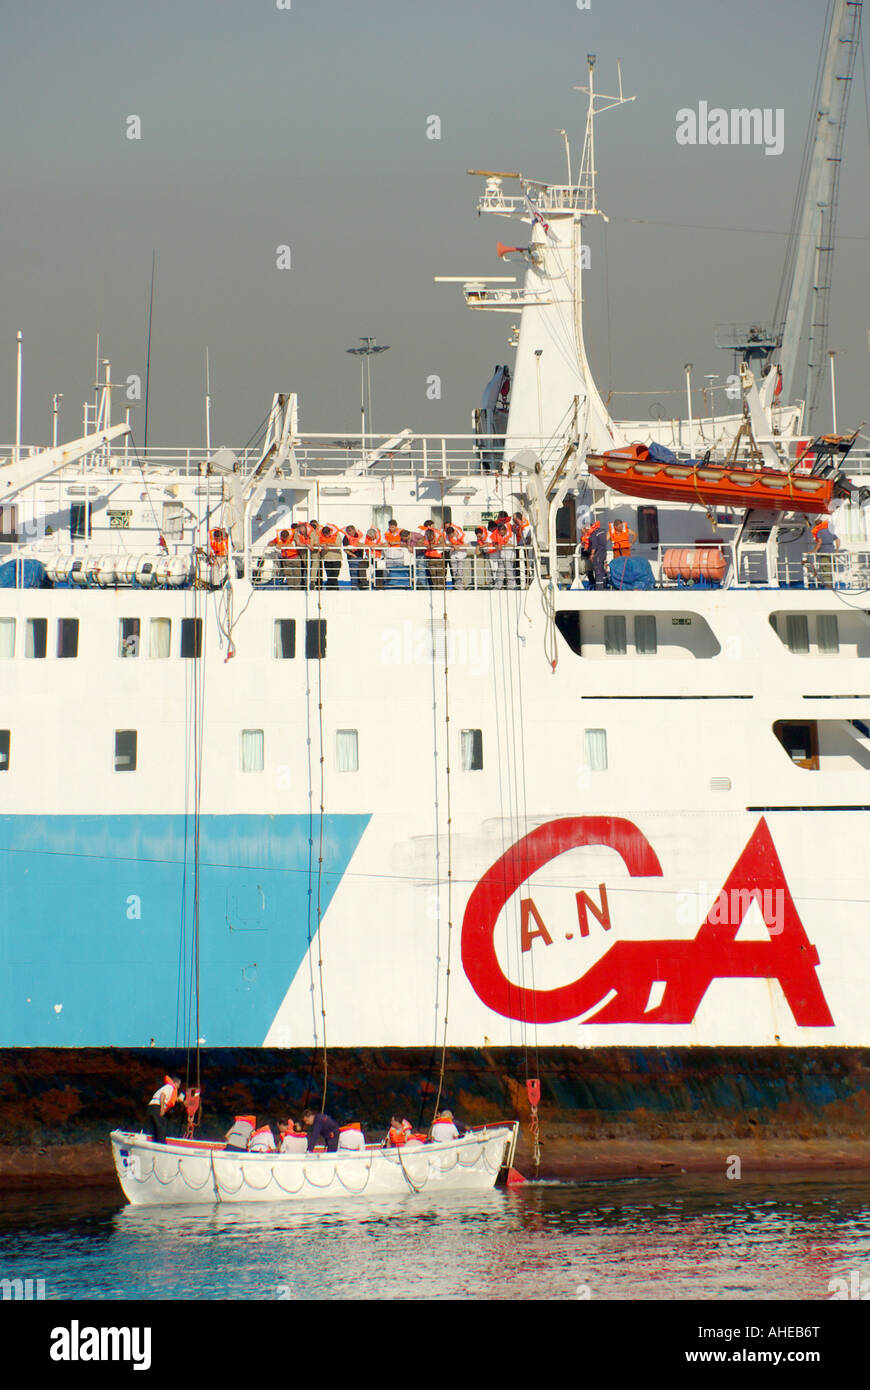 Fähre Thessaloniki port angelegtes Boot Daliana crew Praxis Notfall Evakuierungsübung abgesenkt Rettungsboot mit Menschen an Bord trägt Schwimmweste Griechenland Stockfoto